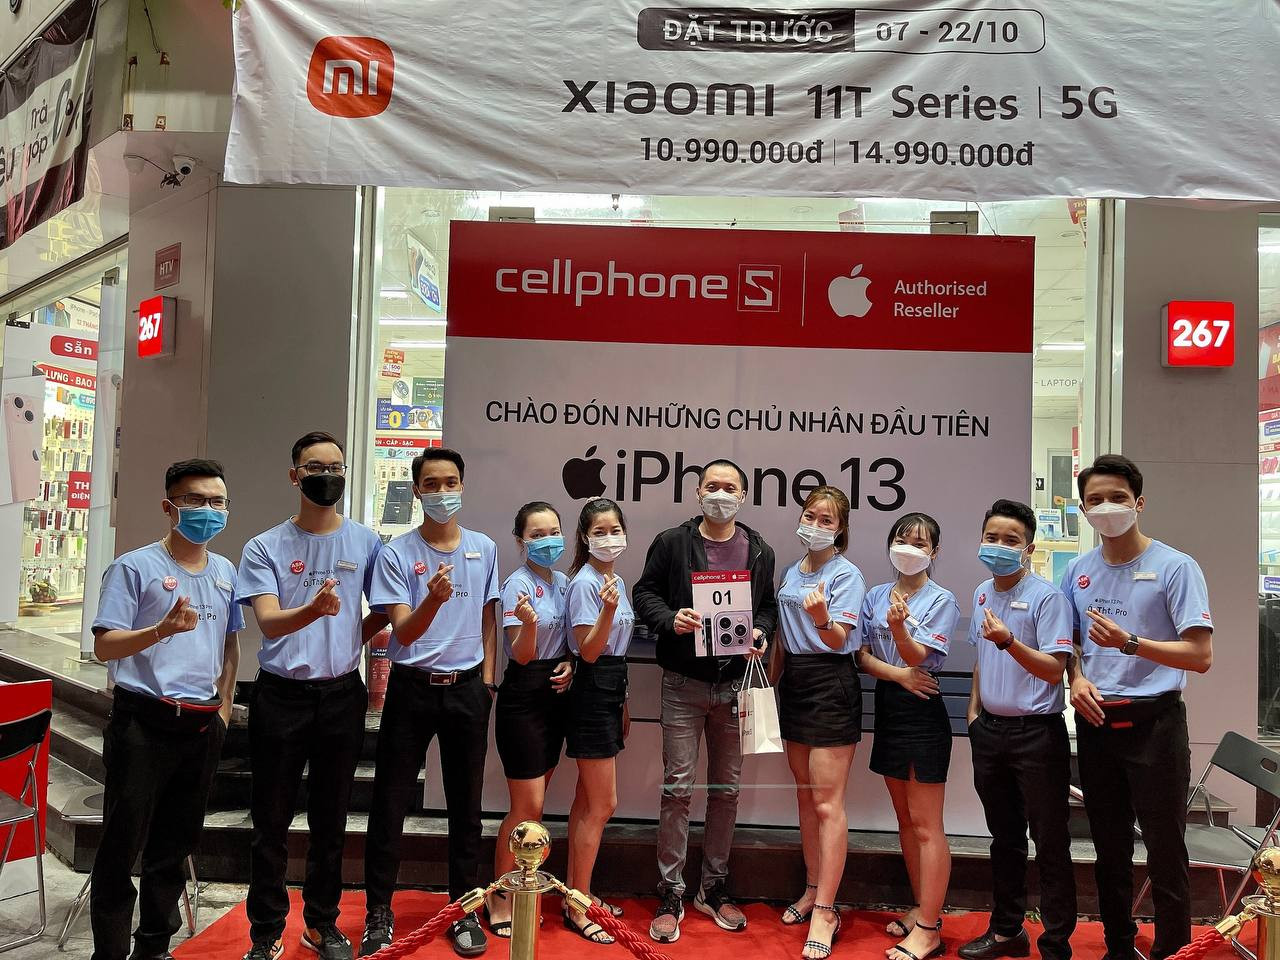 CellphoneS mở bán iPhone 13 chính hãng tại thị trường Việt Nam - Ảnh 5.